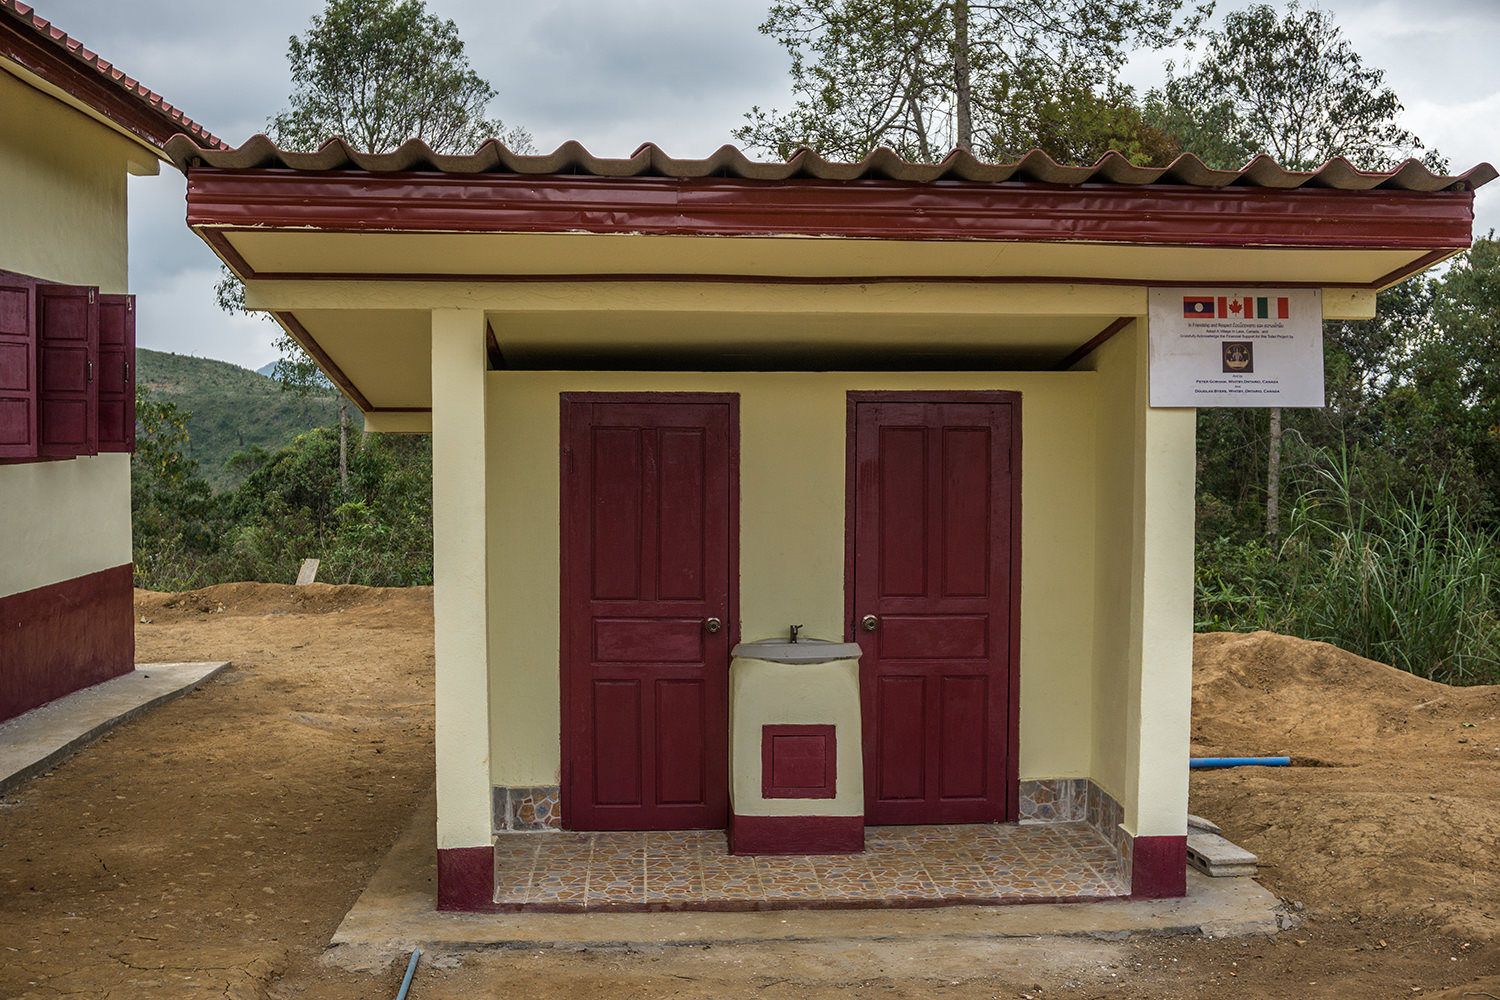 Acqua, villaggi, istruzione e corsi di igiene. L’impegno in Laos dell’associazione Ink For Charity